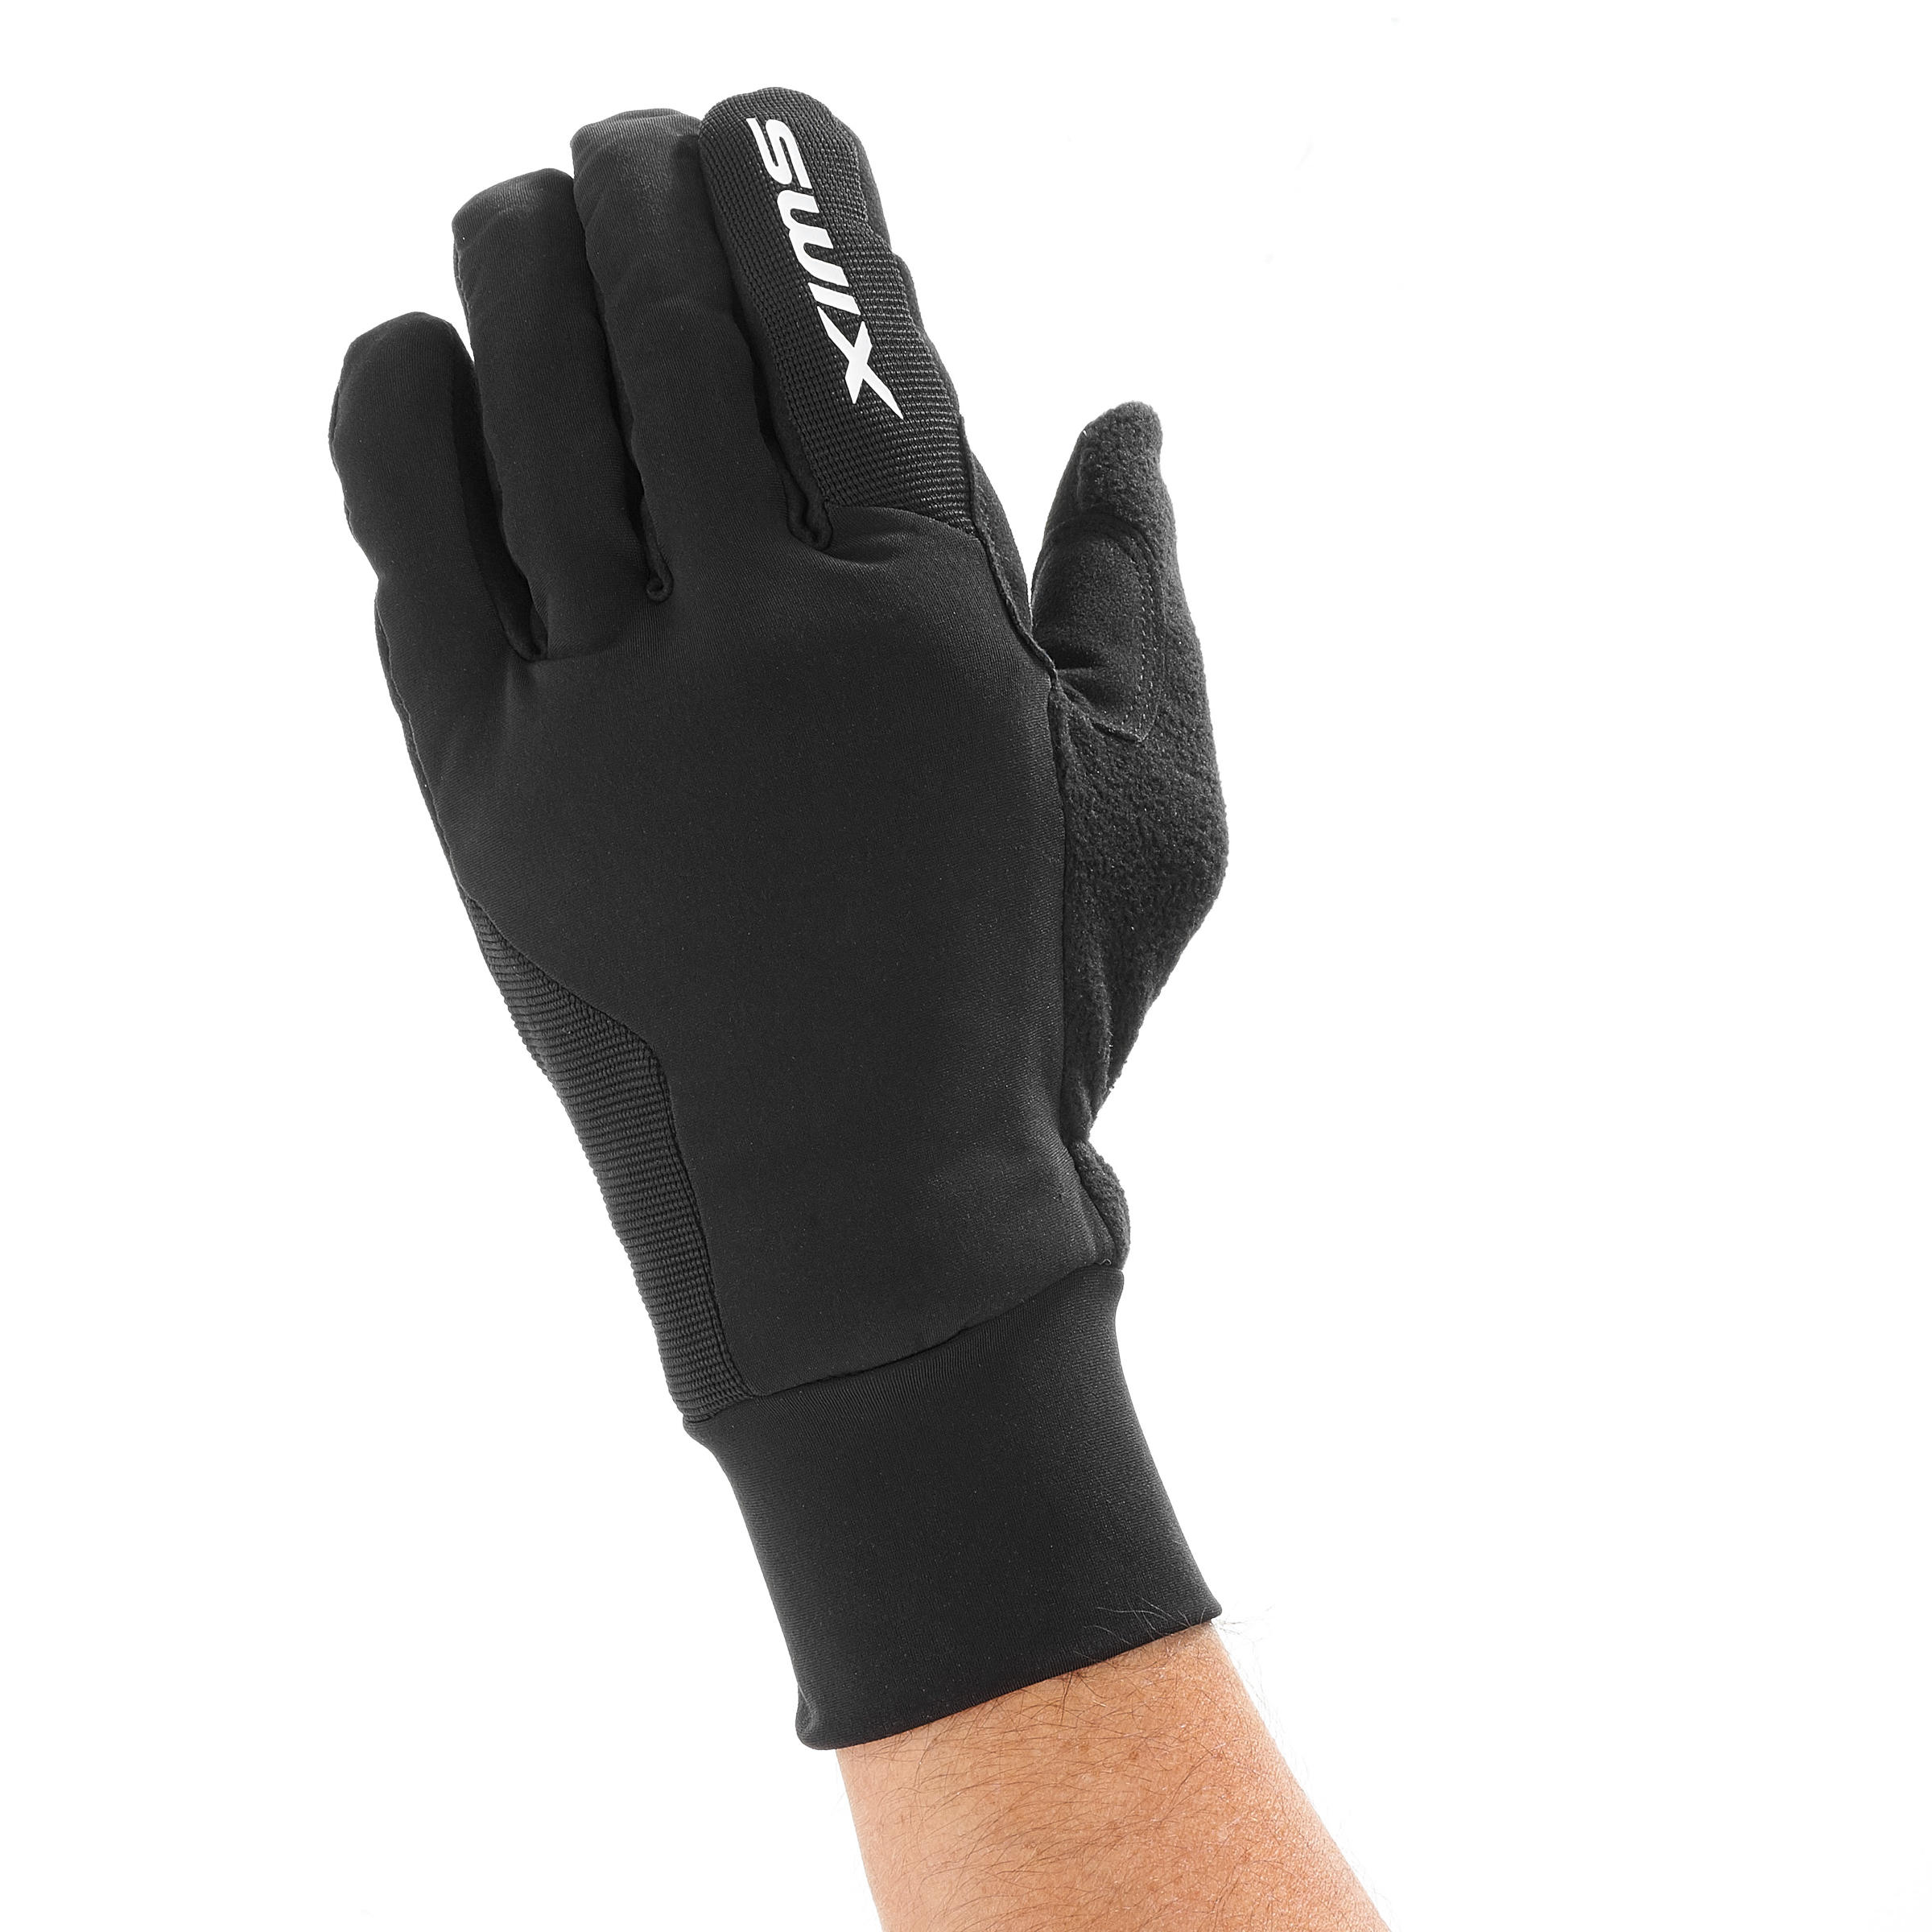 Men's Cross-Country Ski Gloves | XC S LYNX - Black 6/9